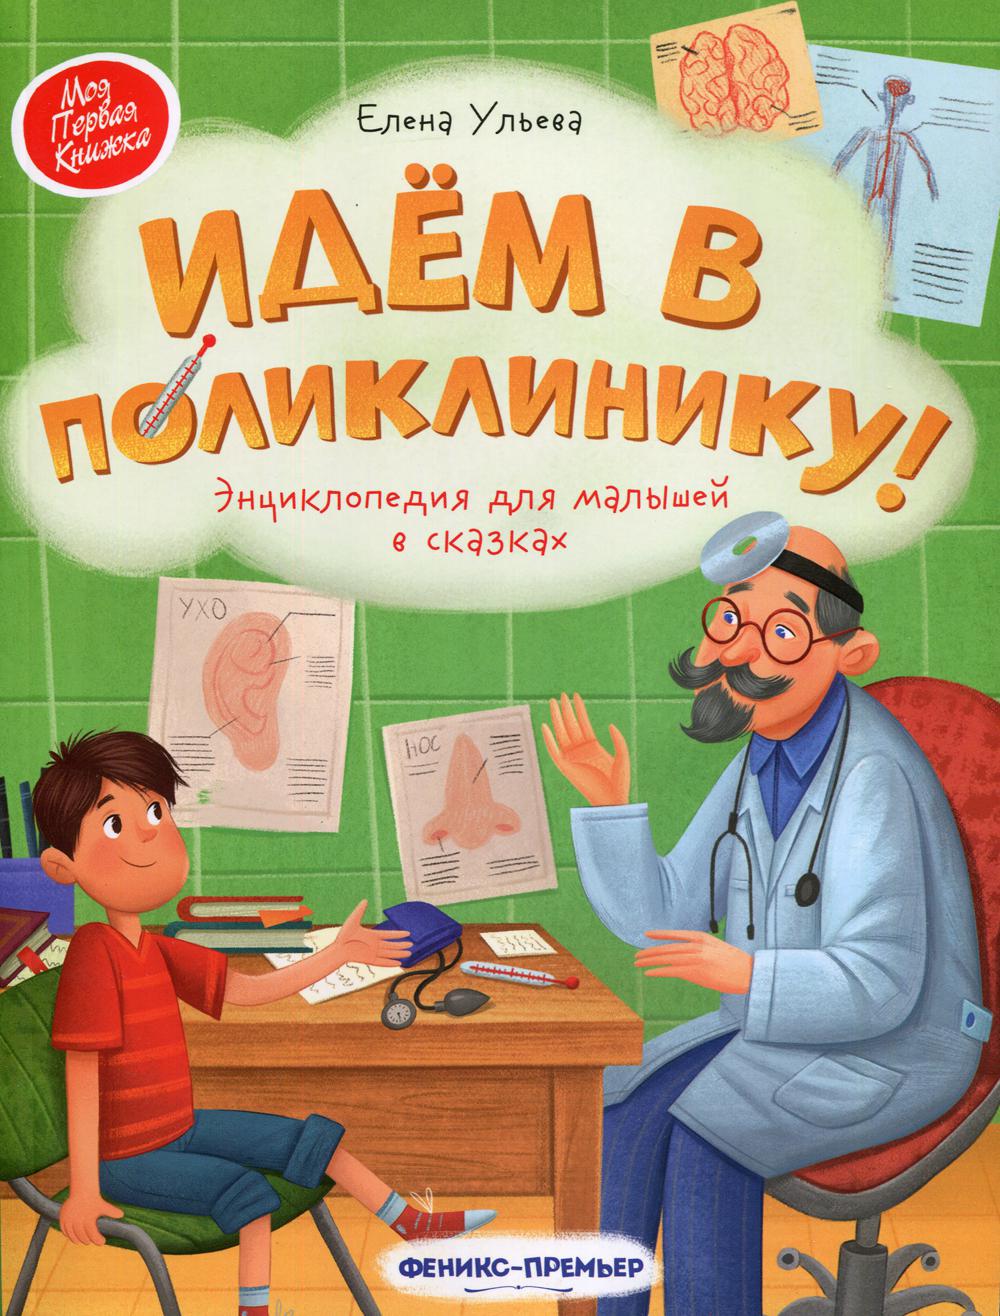 Идем в поликлинику!: энциклопедия для малышей в сказках